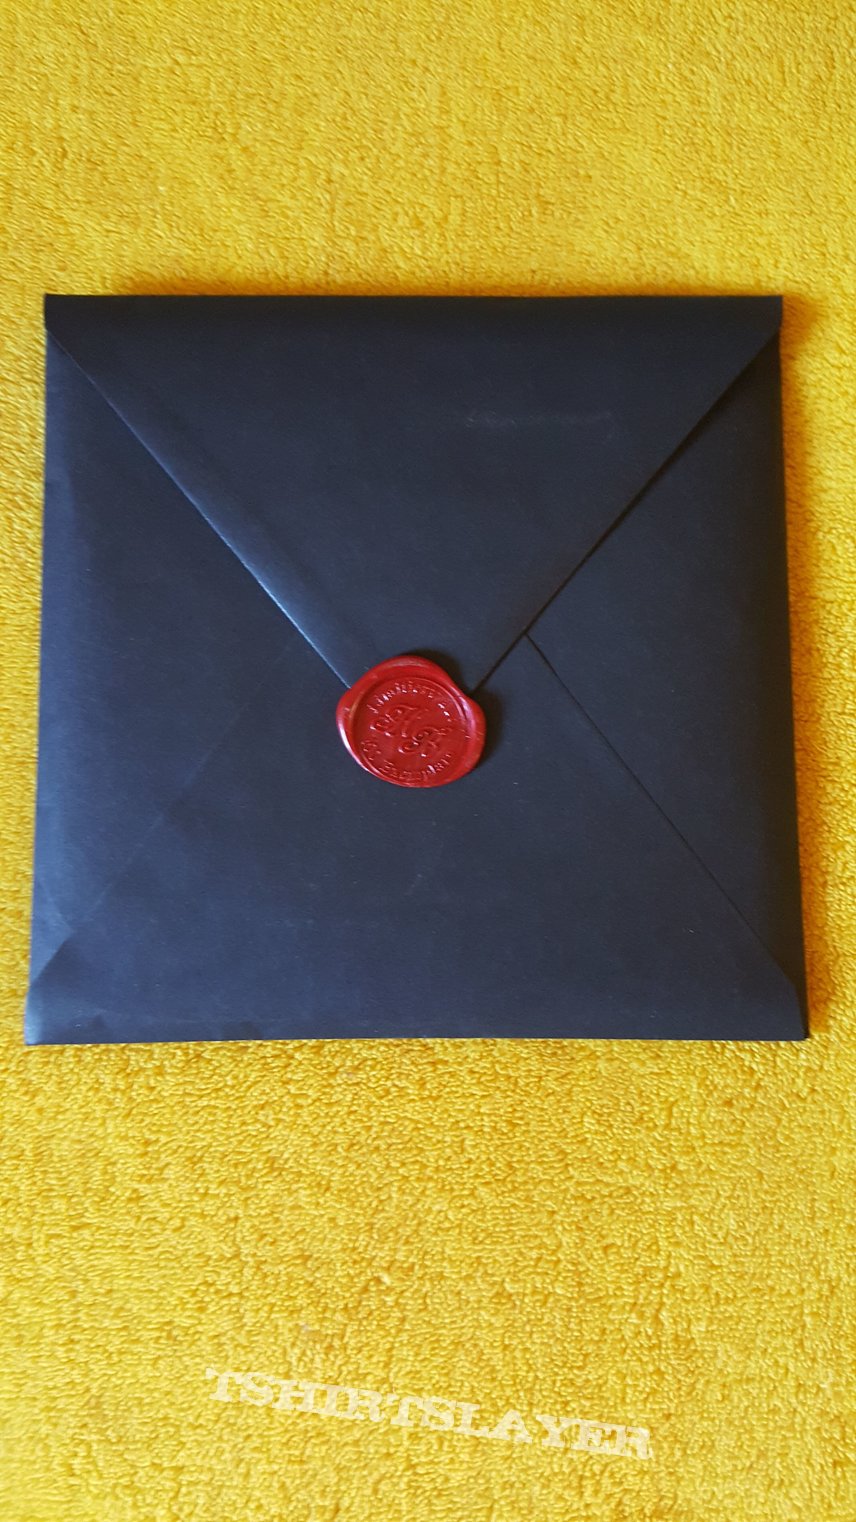 Stahlfront ‎– I.Z.D.R. Limited Edition, Black Envelope